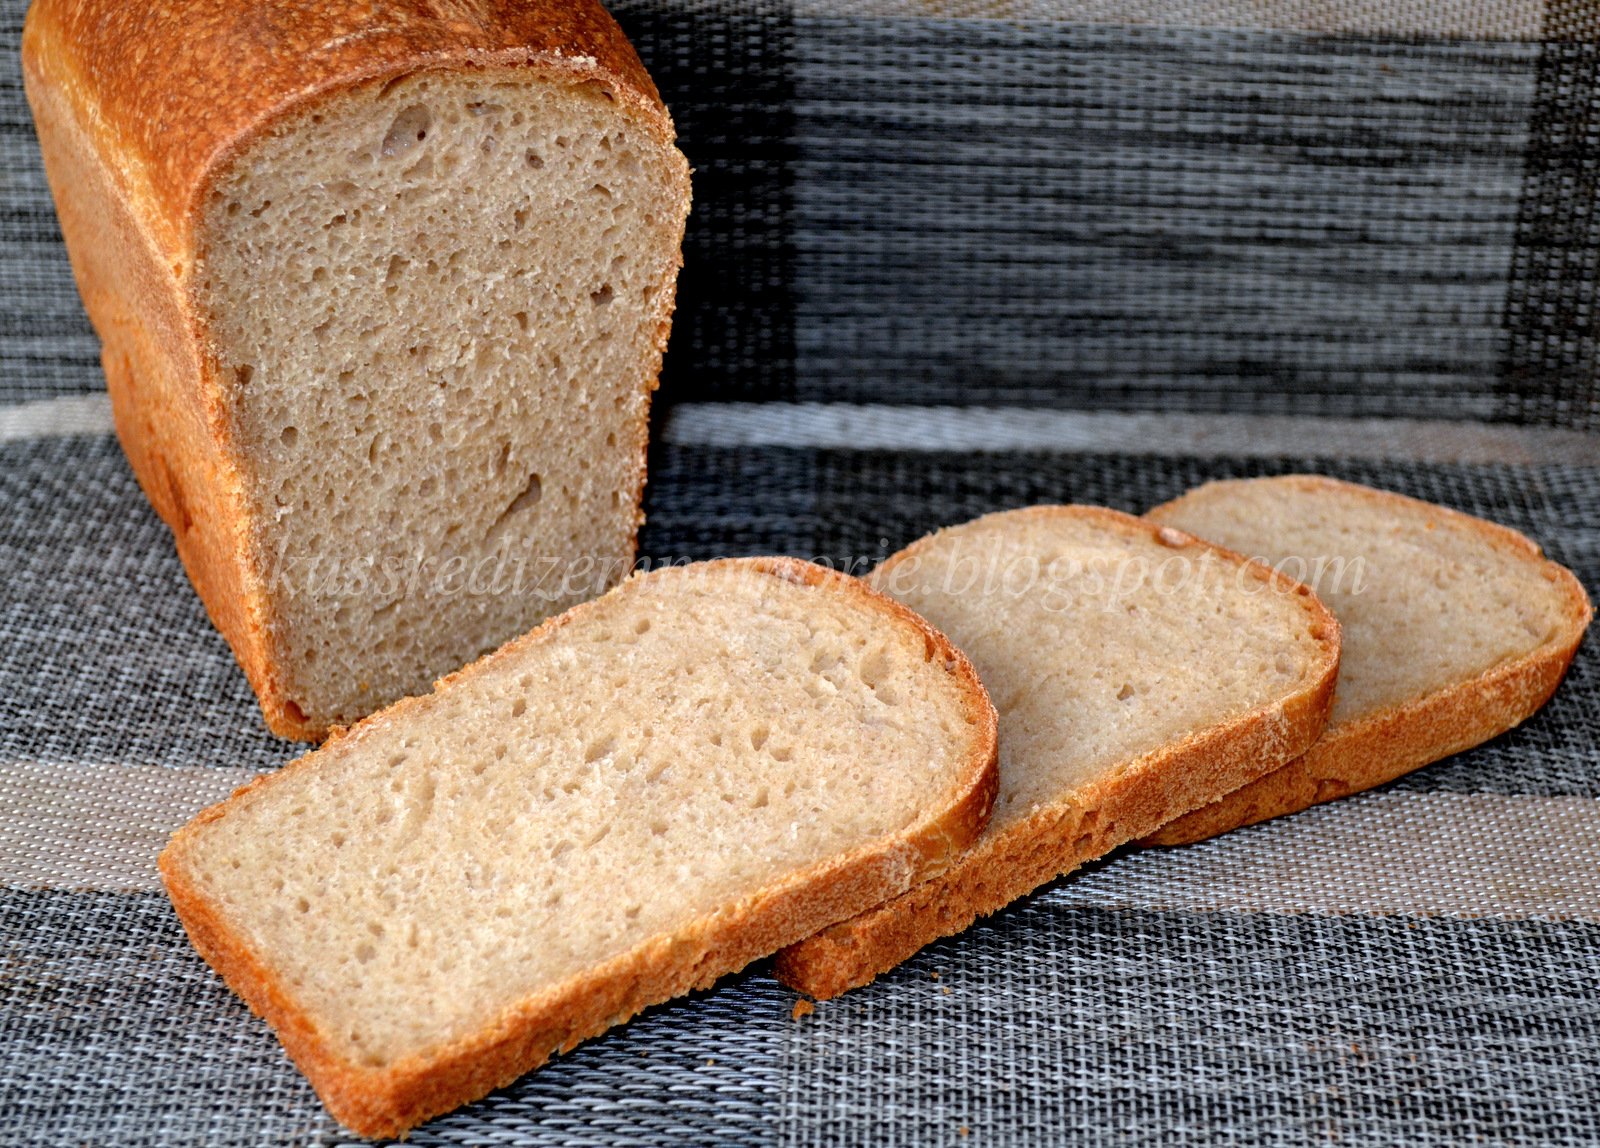 We ve got bread. Пшеничный хлеб пшеничный хлеб. Формовой пшеничный хлеб на закваске. Ржано-пшеничный хлеб ржано-пшеничный хлеб. Белый формовой хлеб на закваске.